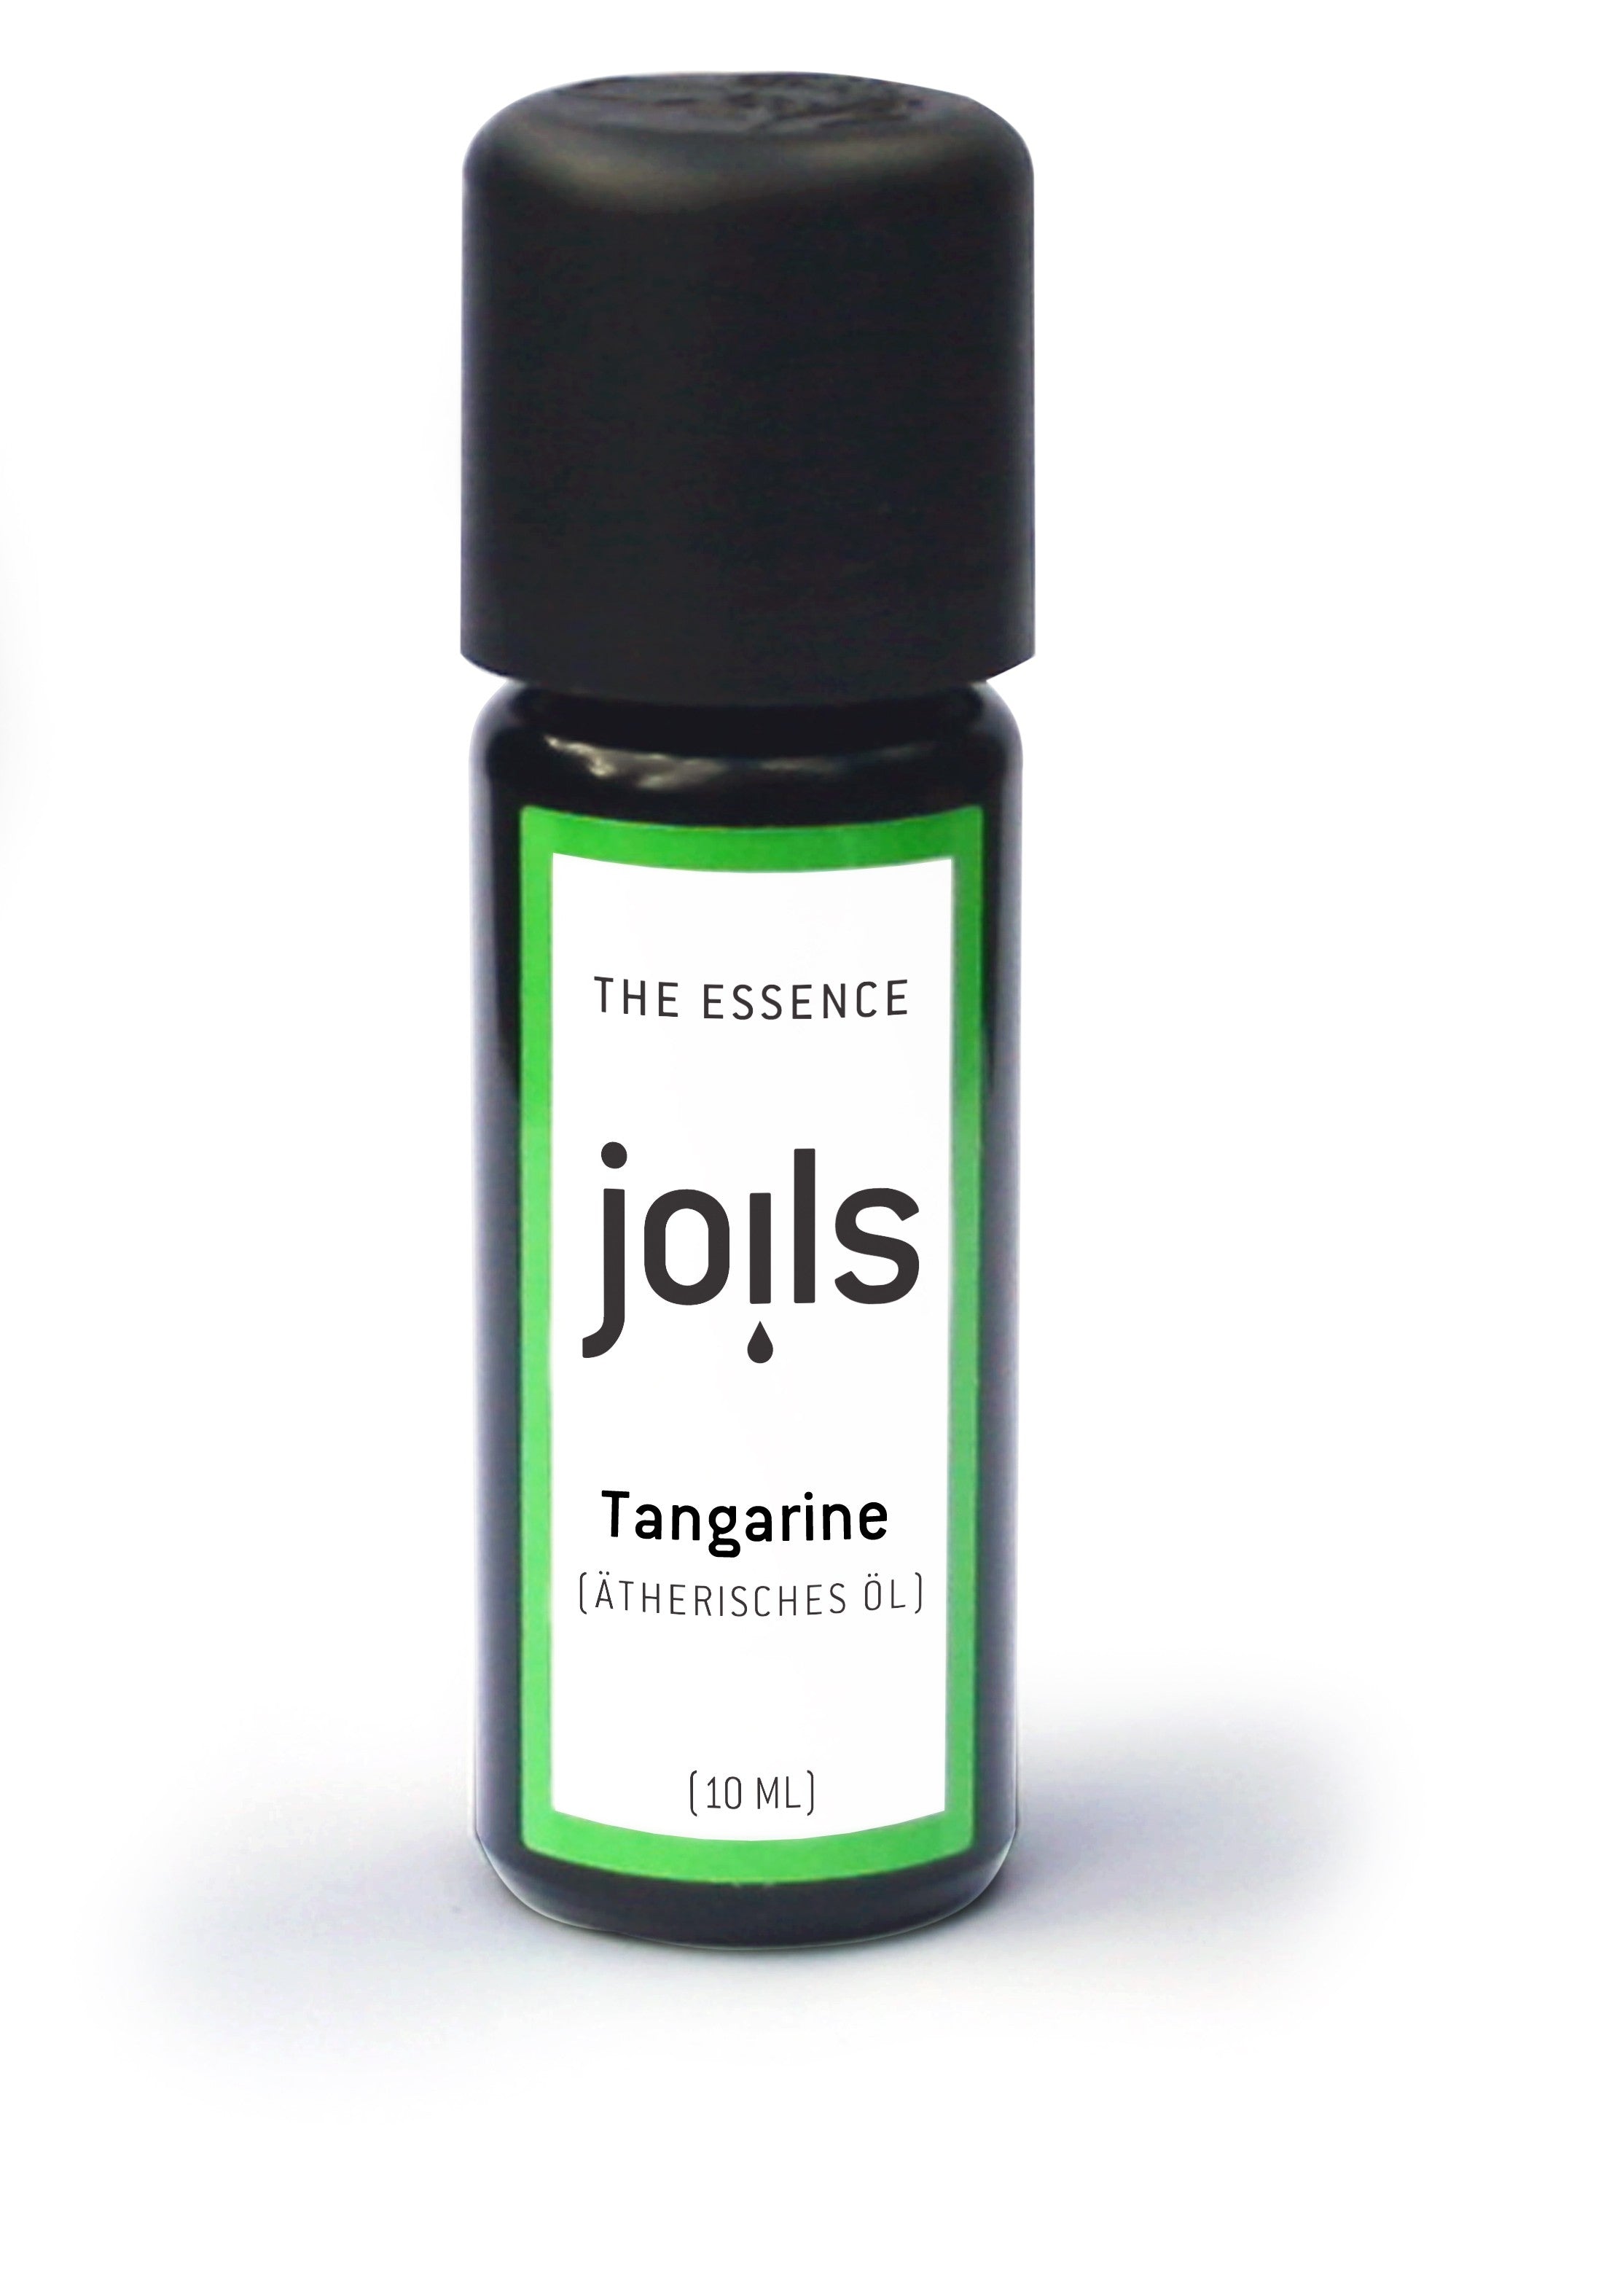 TANGARINE 10ml - Joils